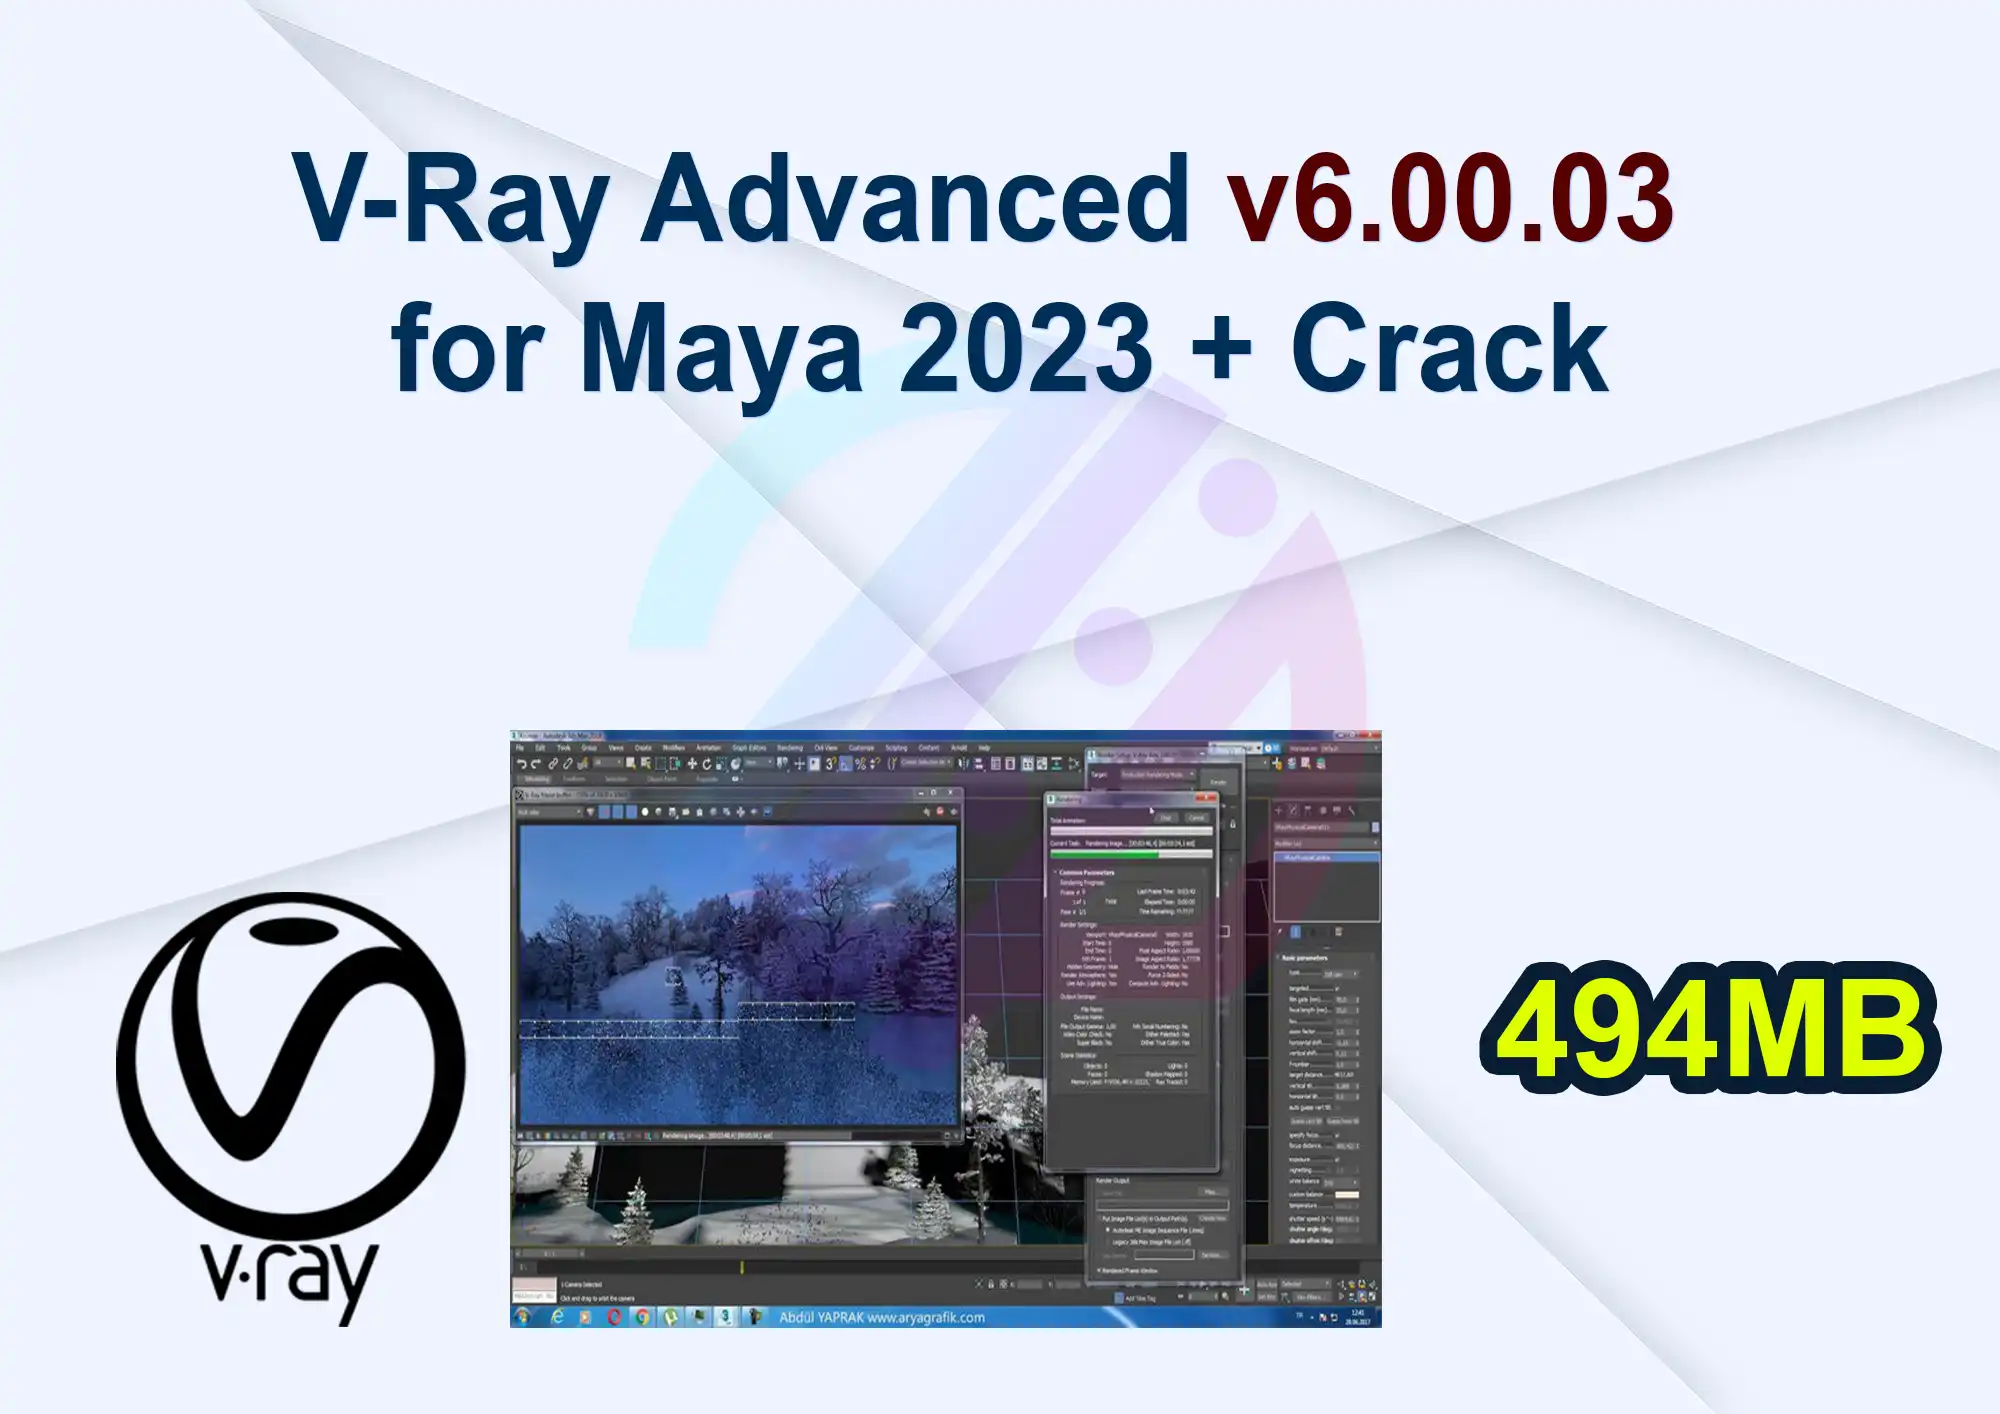 V-Ray Advanced v6.00.03 for Maya 2023 + Crack